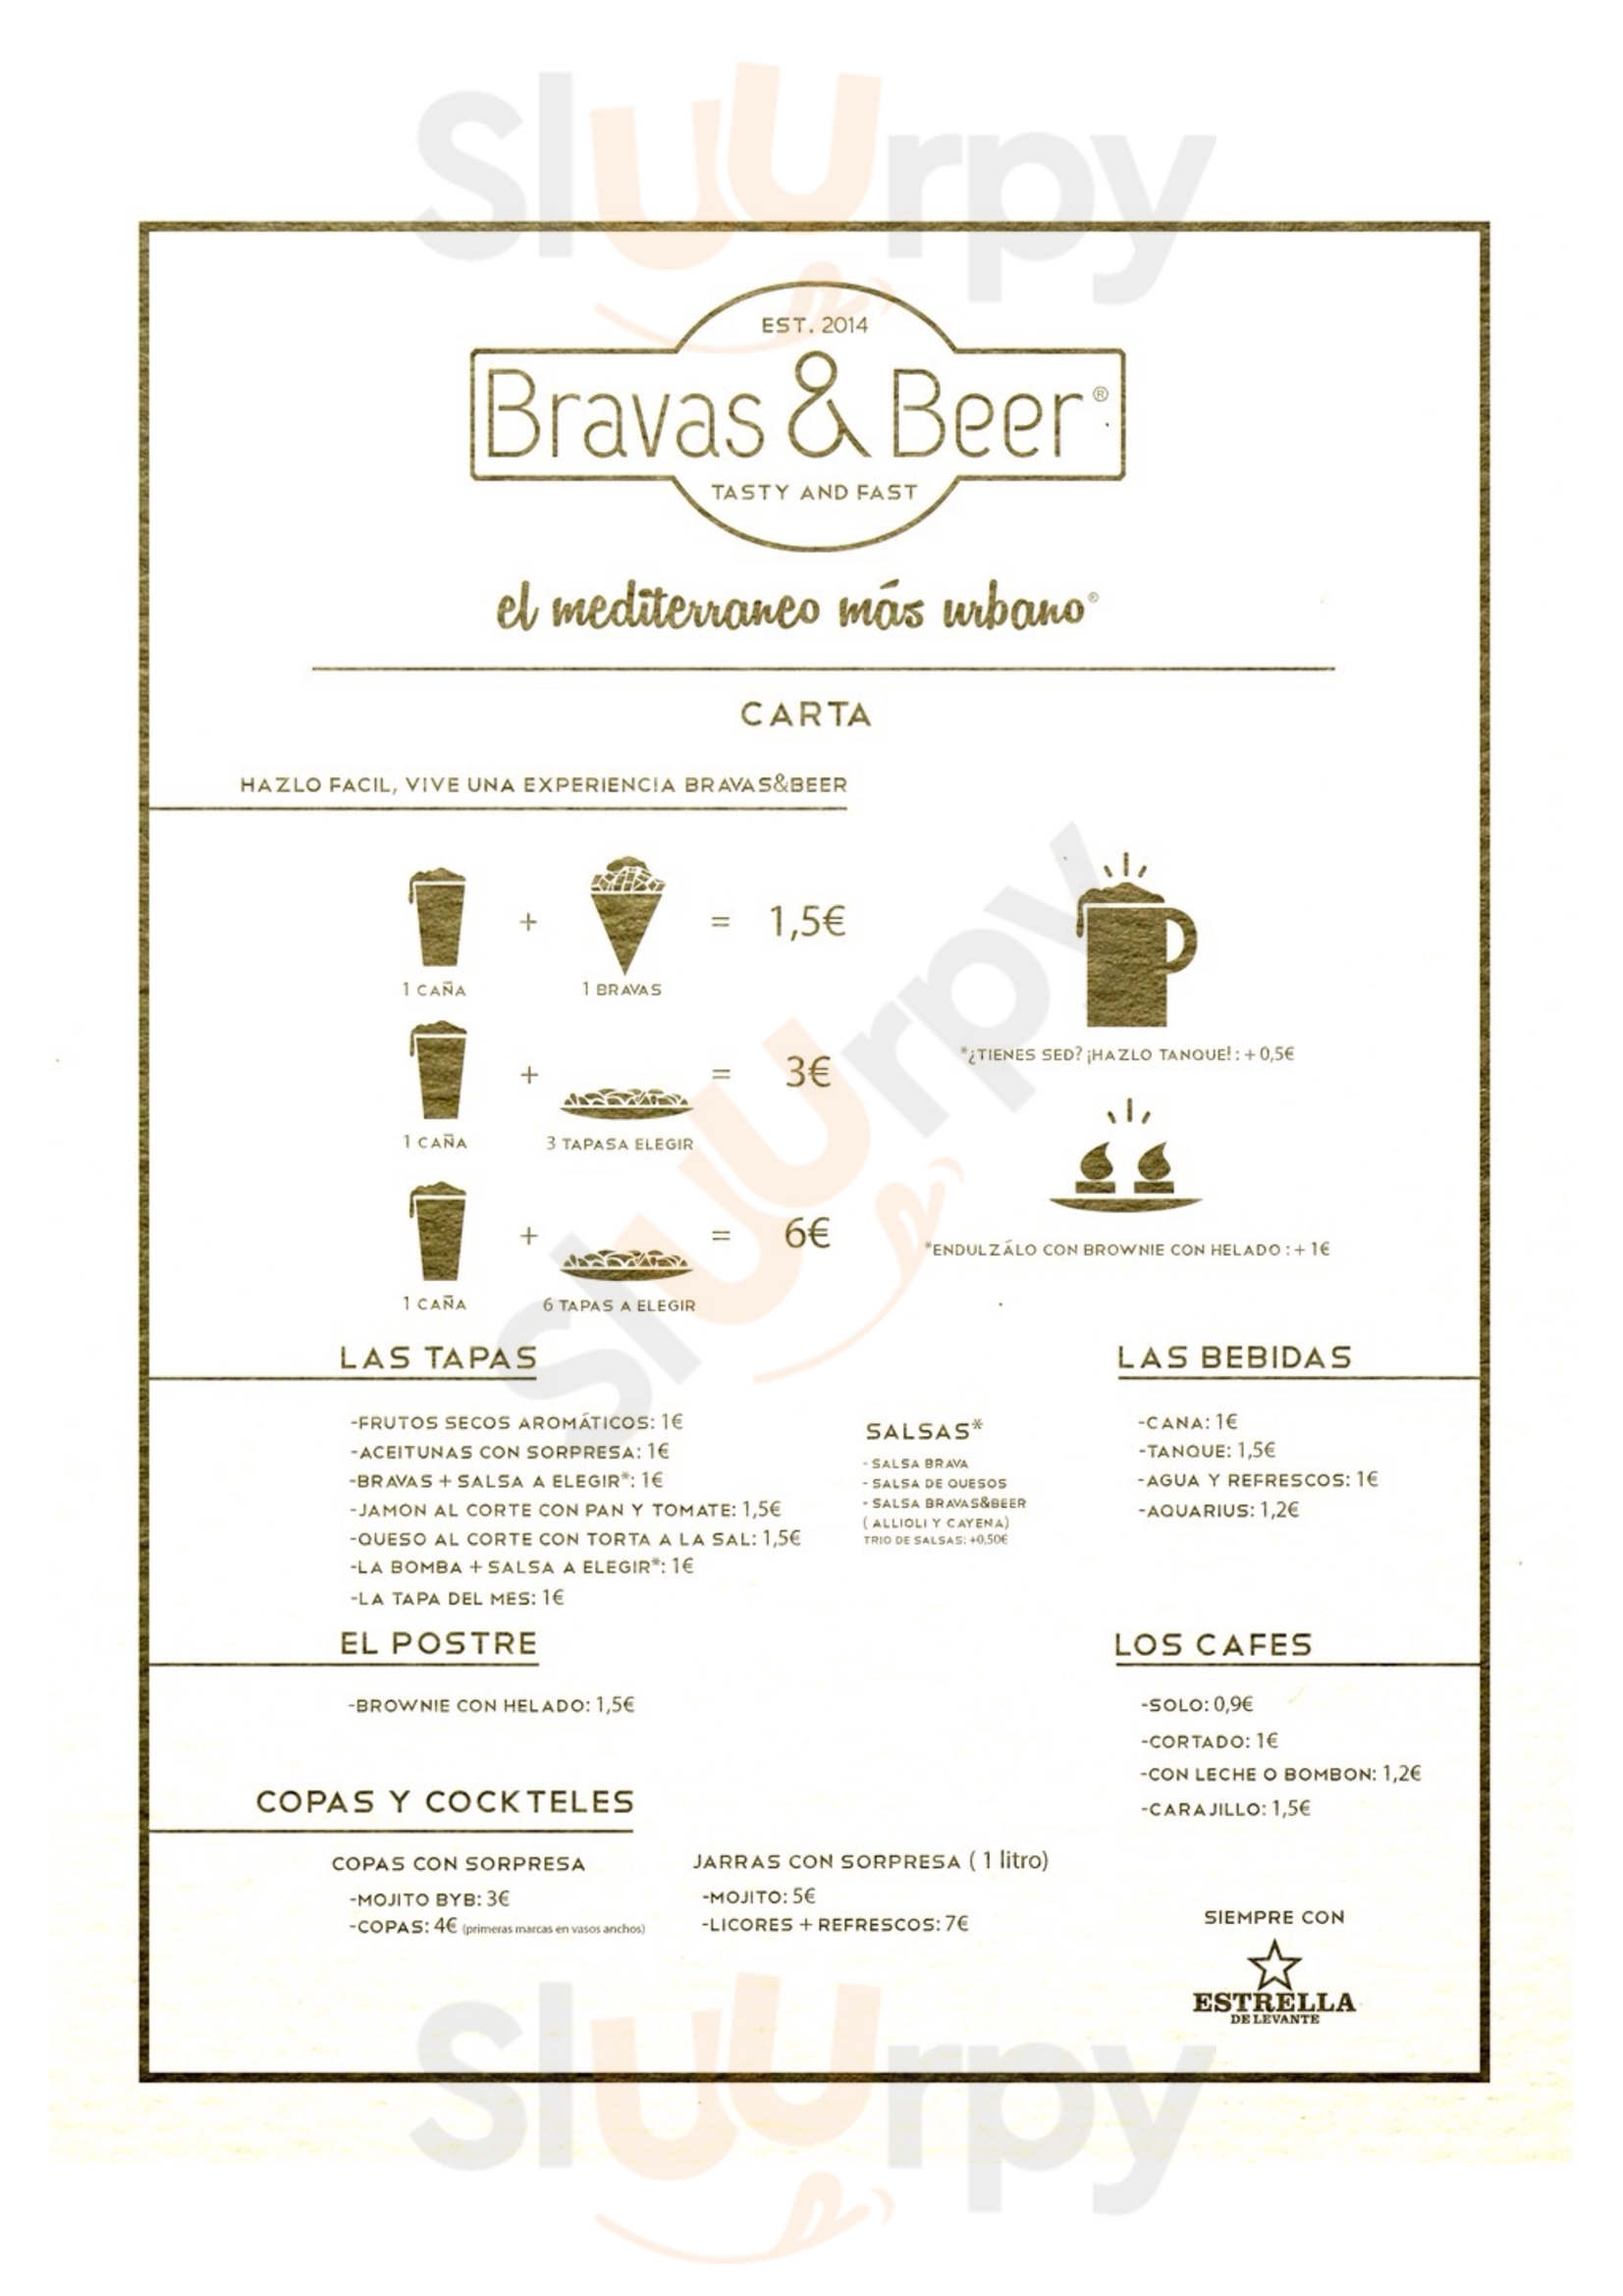 Bravas & Beer Elche Menu - 1